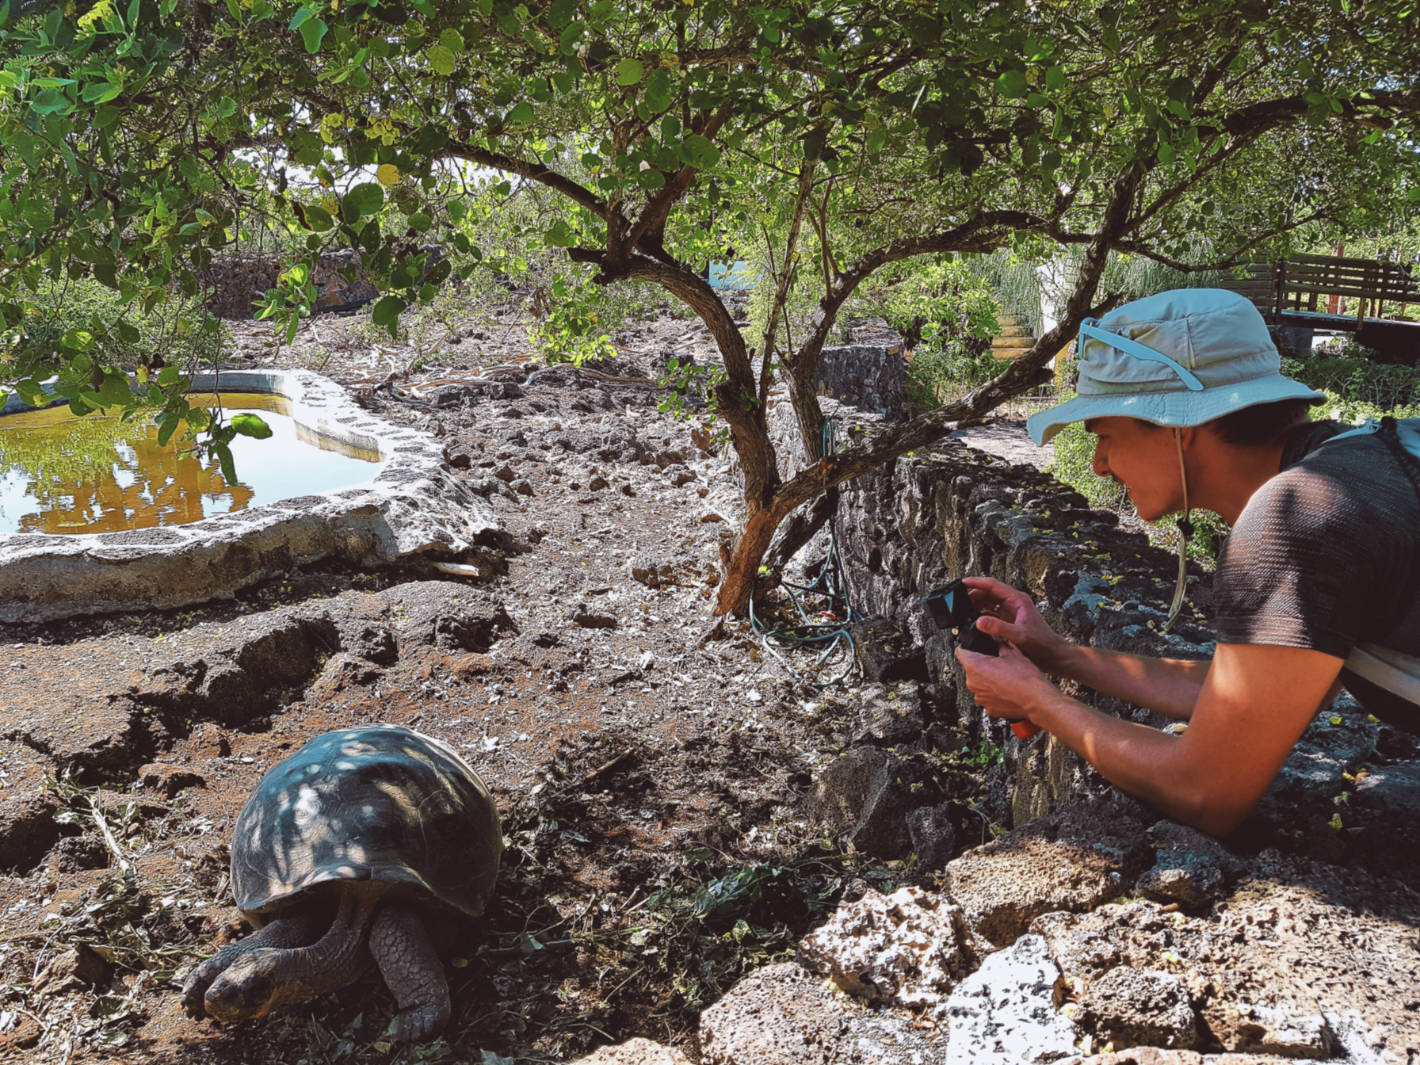 Jak tanio zwiedzić Wyspy Galapagos Darmowe atrakcje na wyspach (4)